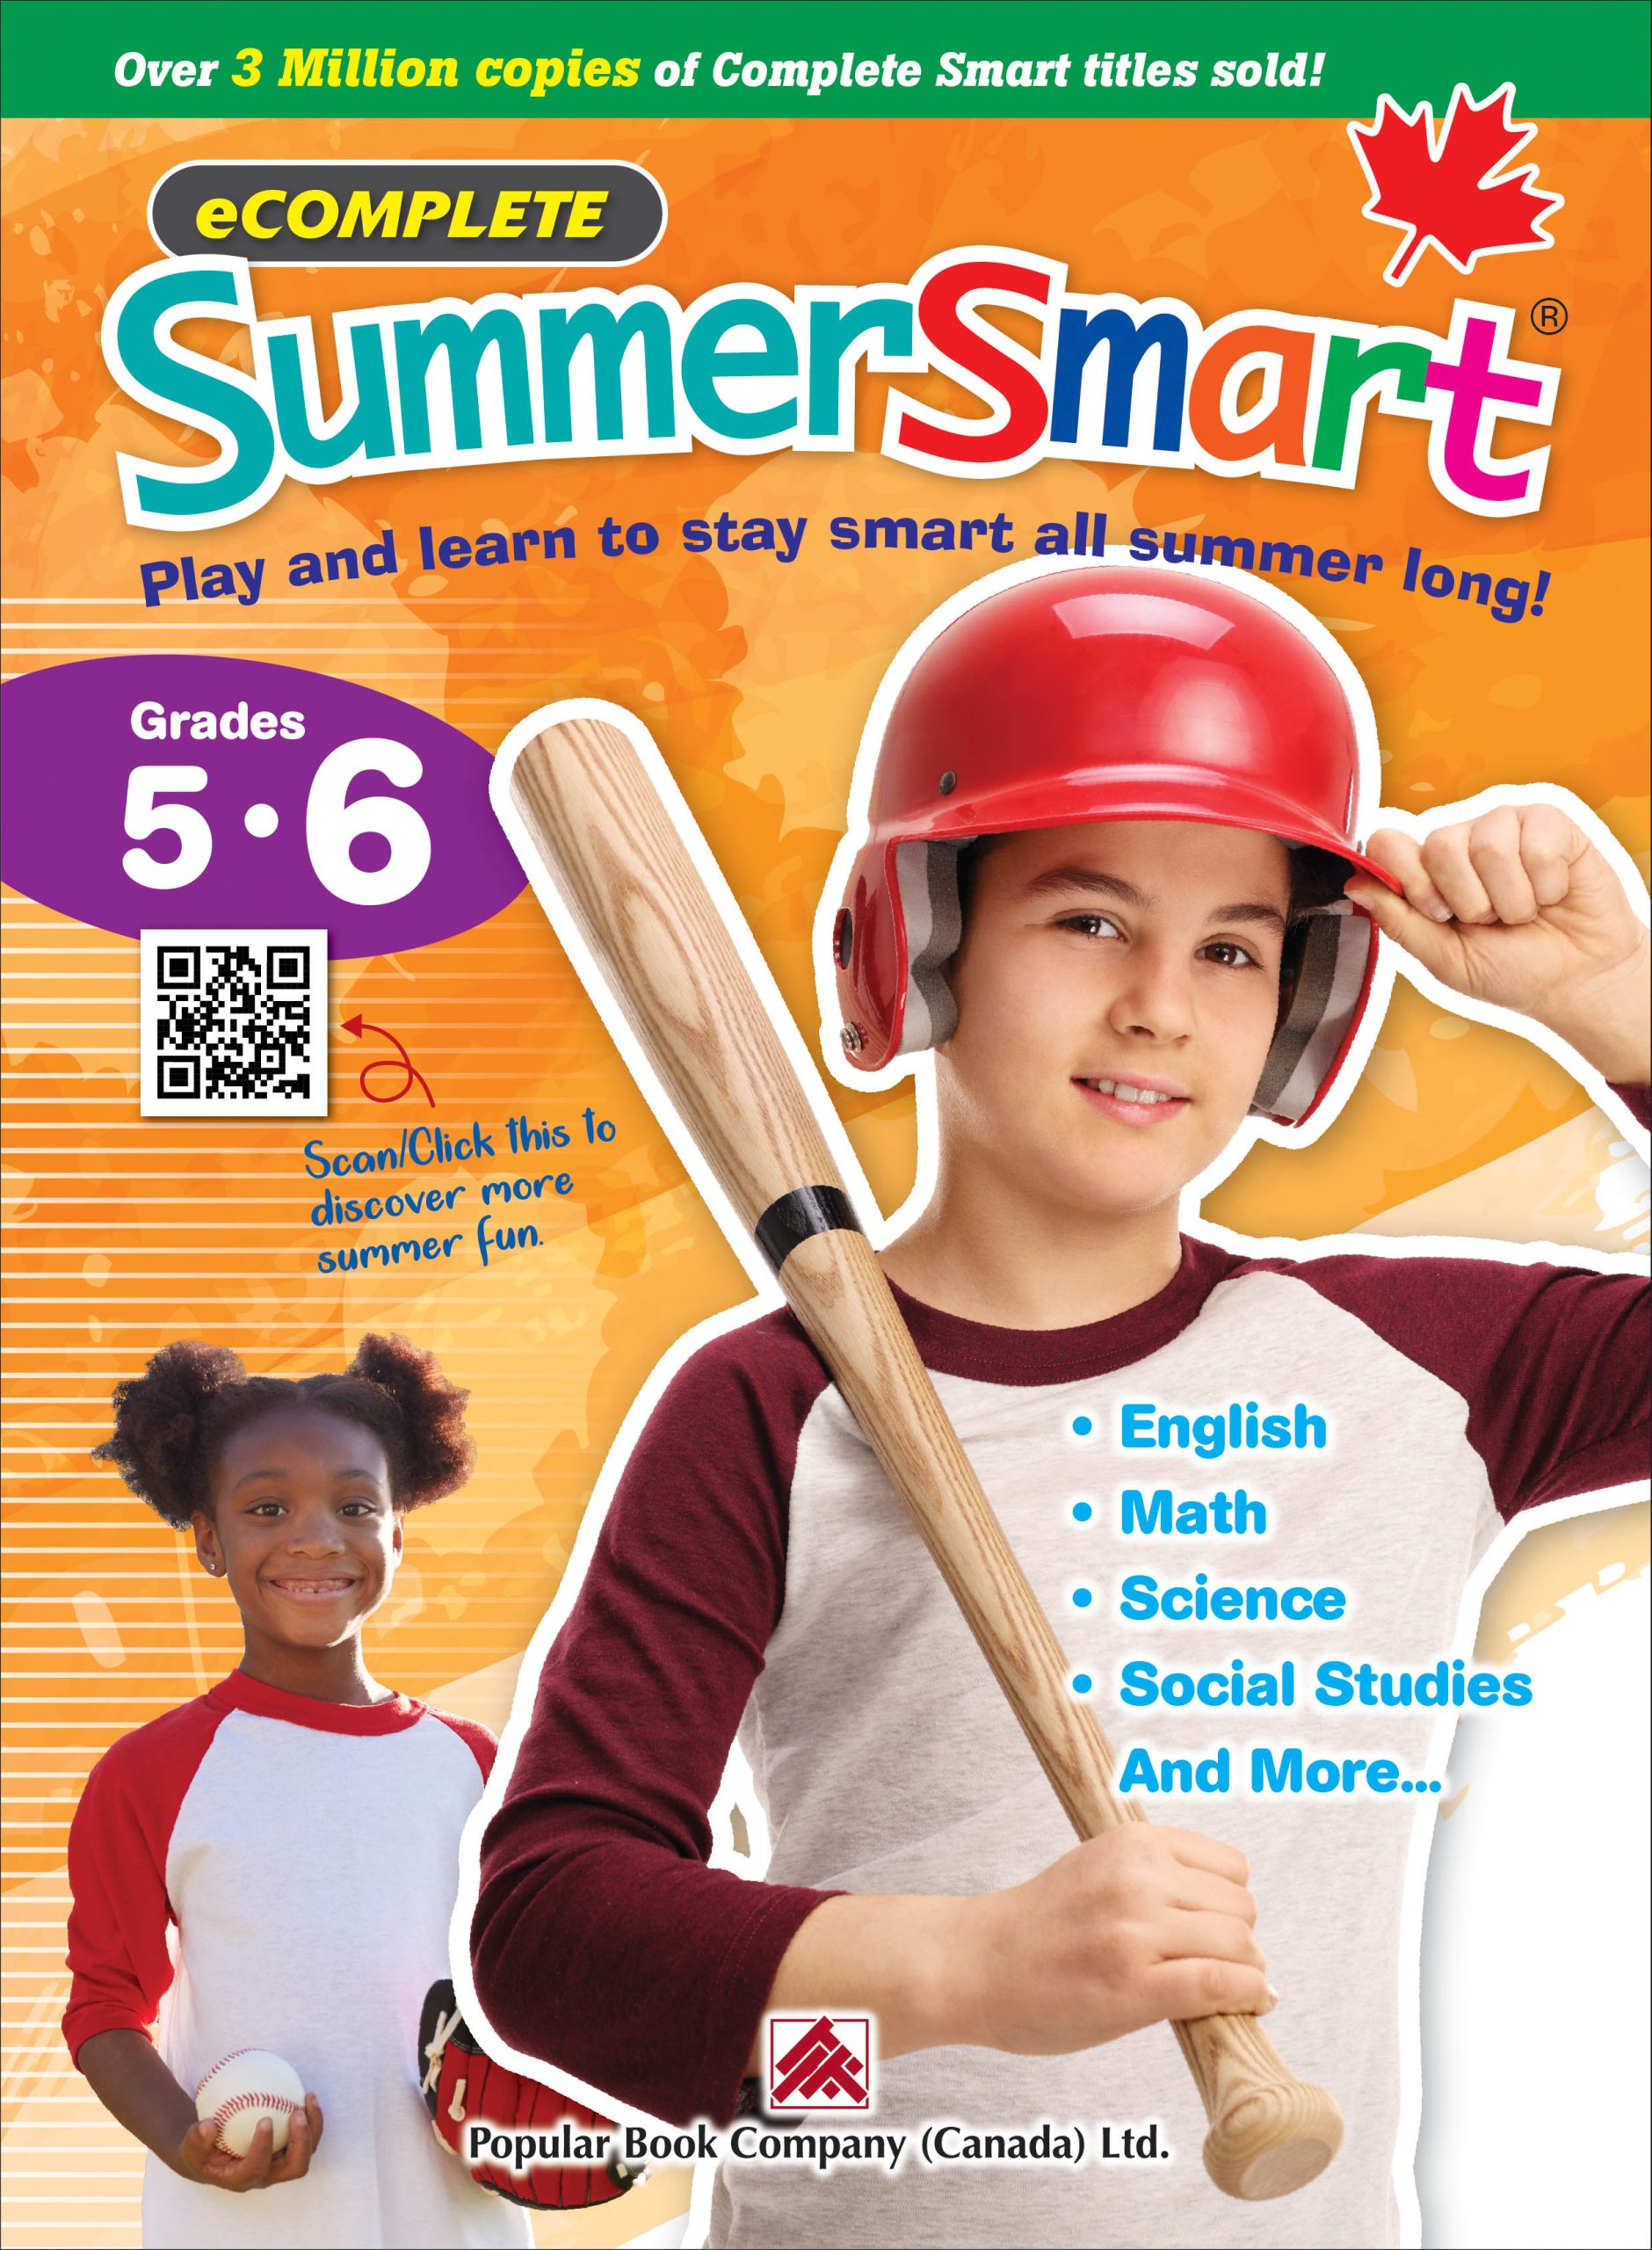 Ecomplete Summersmart Grade 5 6 Book Popular Book Company Canada Ltd 8352